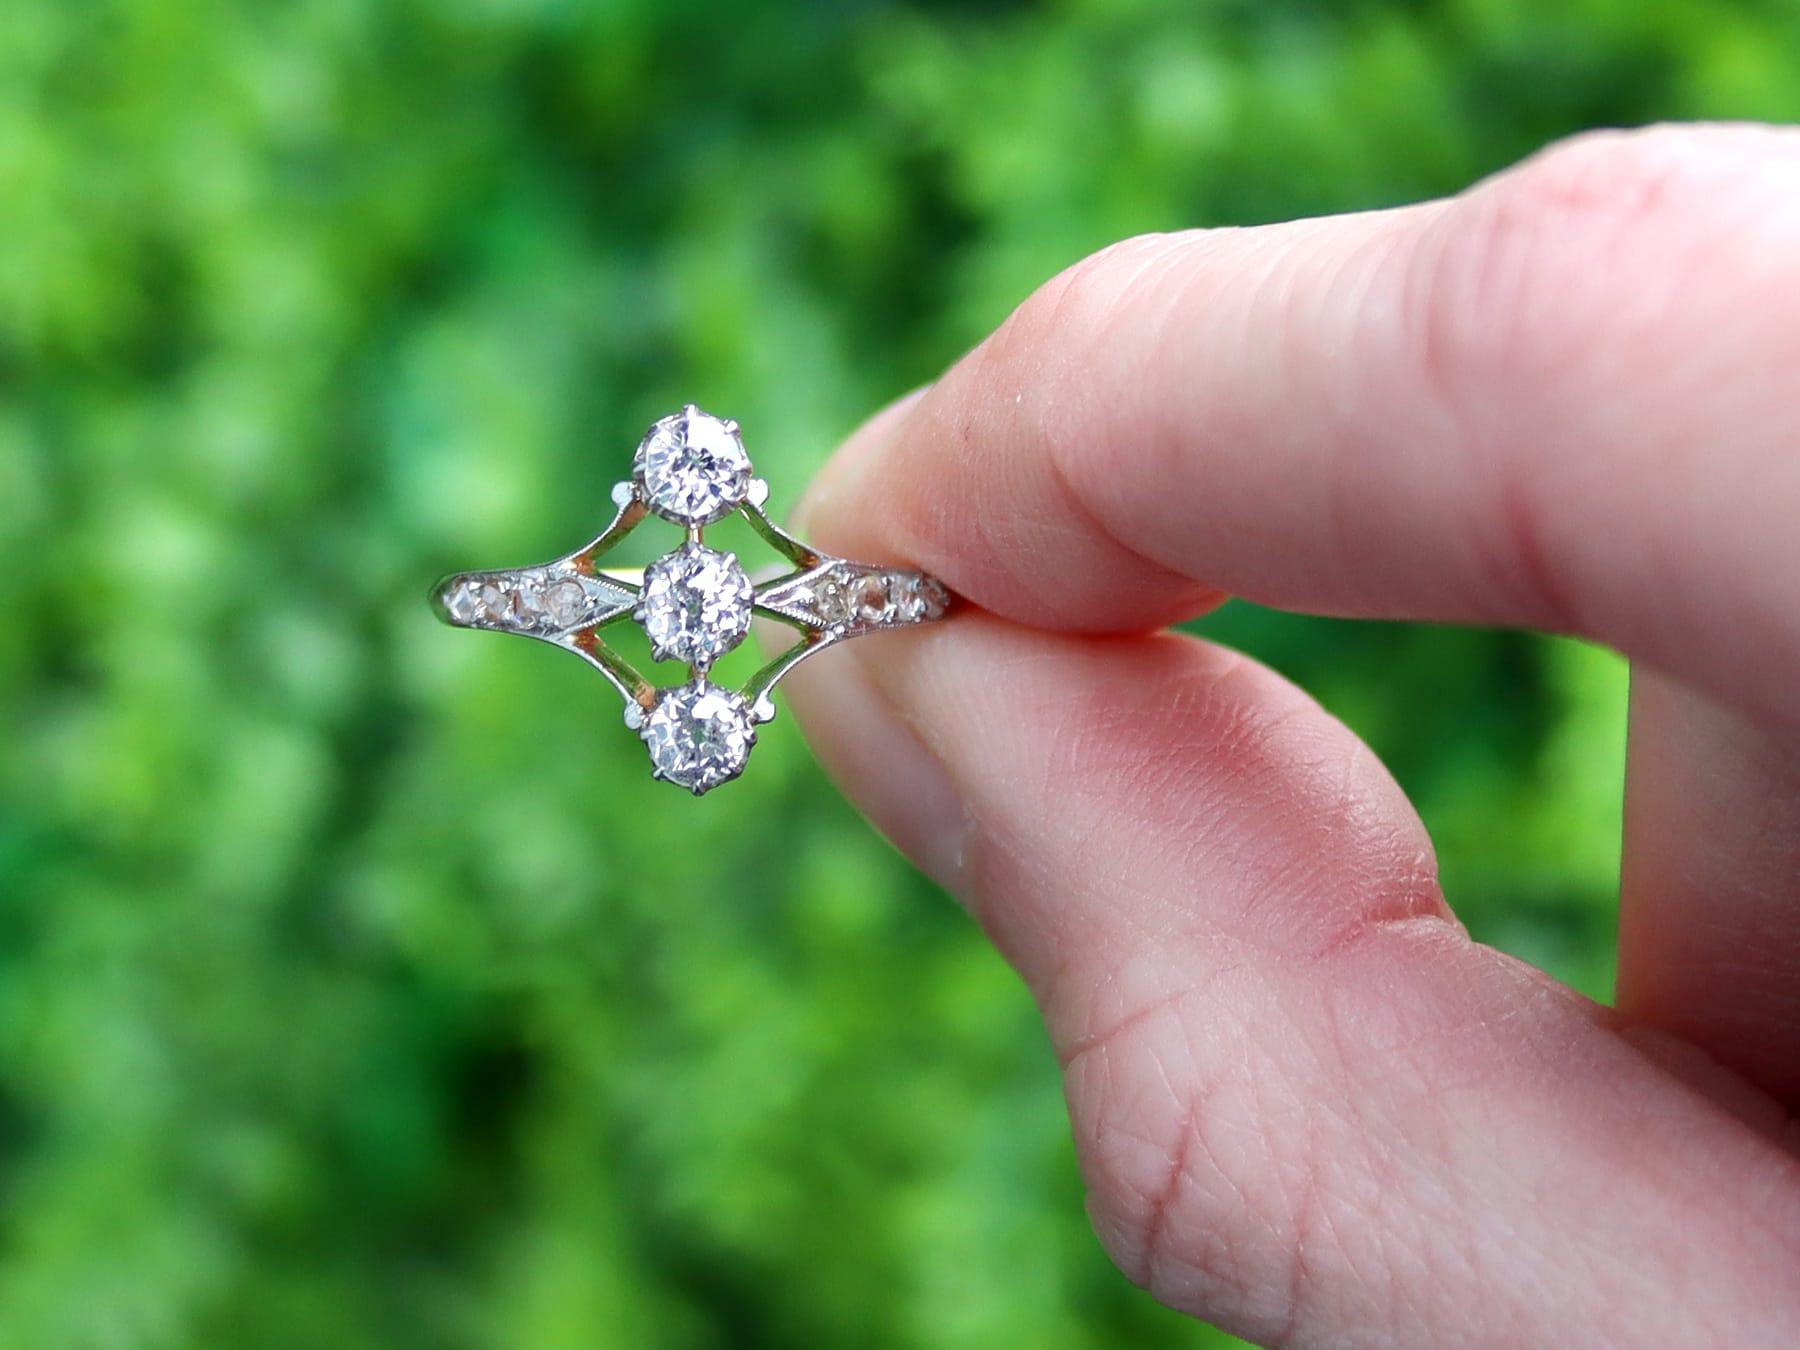 Eine beeindruckende antike 0,70 Karat Diamanten und 18 Karat Roségold, Platin-Set Trilogie Stil Kleid Ring; Teil unserer vielfältigen antiken Schmuck und Estate Jewelry Sammlungen.

Dieser feine und beeindruckende Diamant-Trilogie-Ring wurde in 18